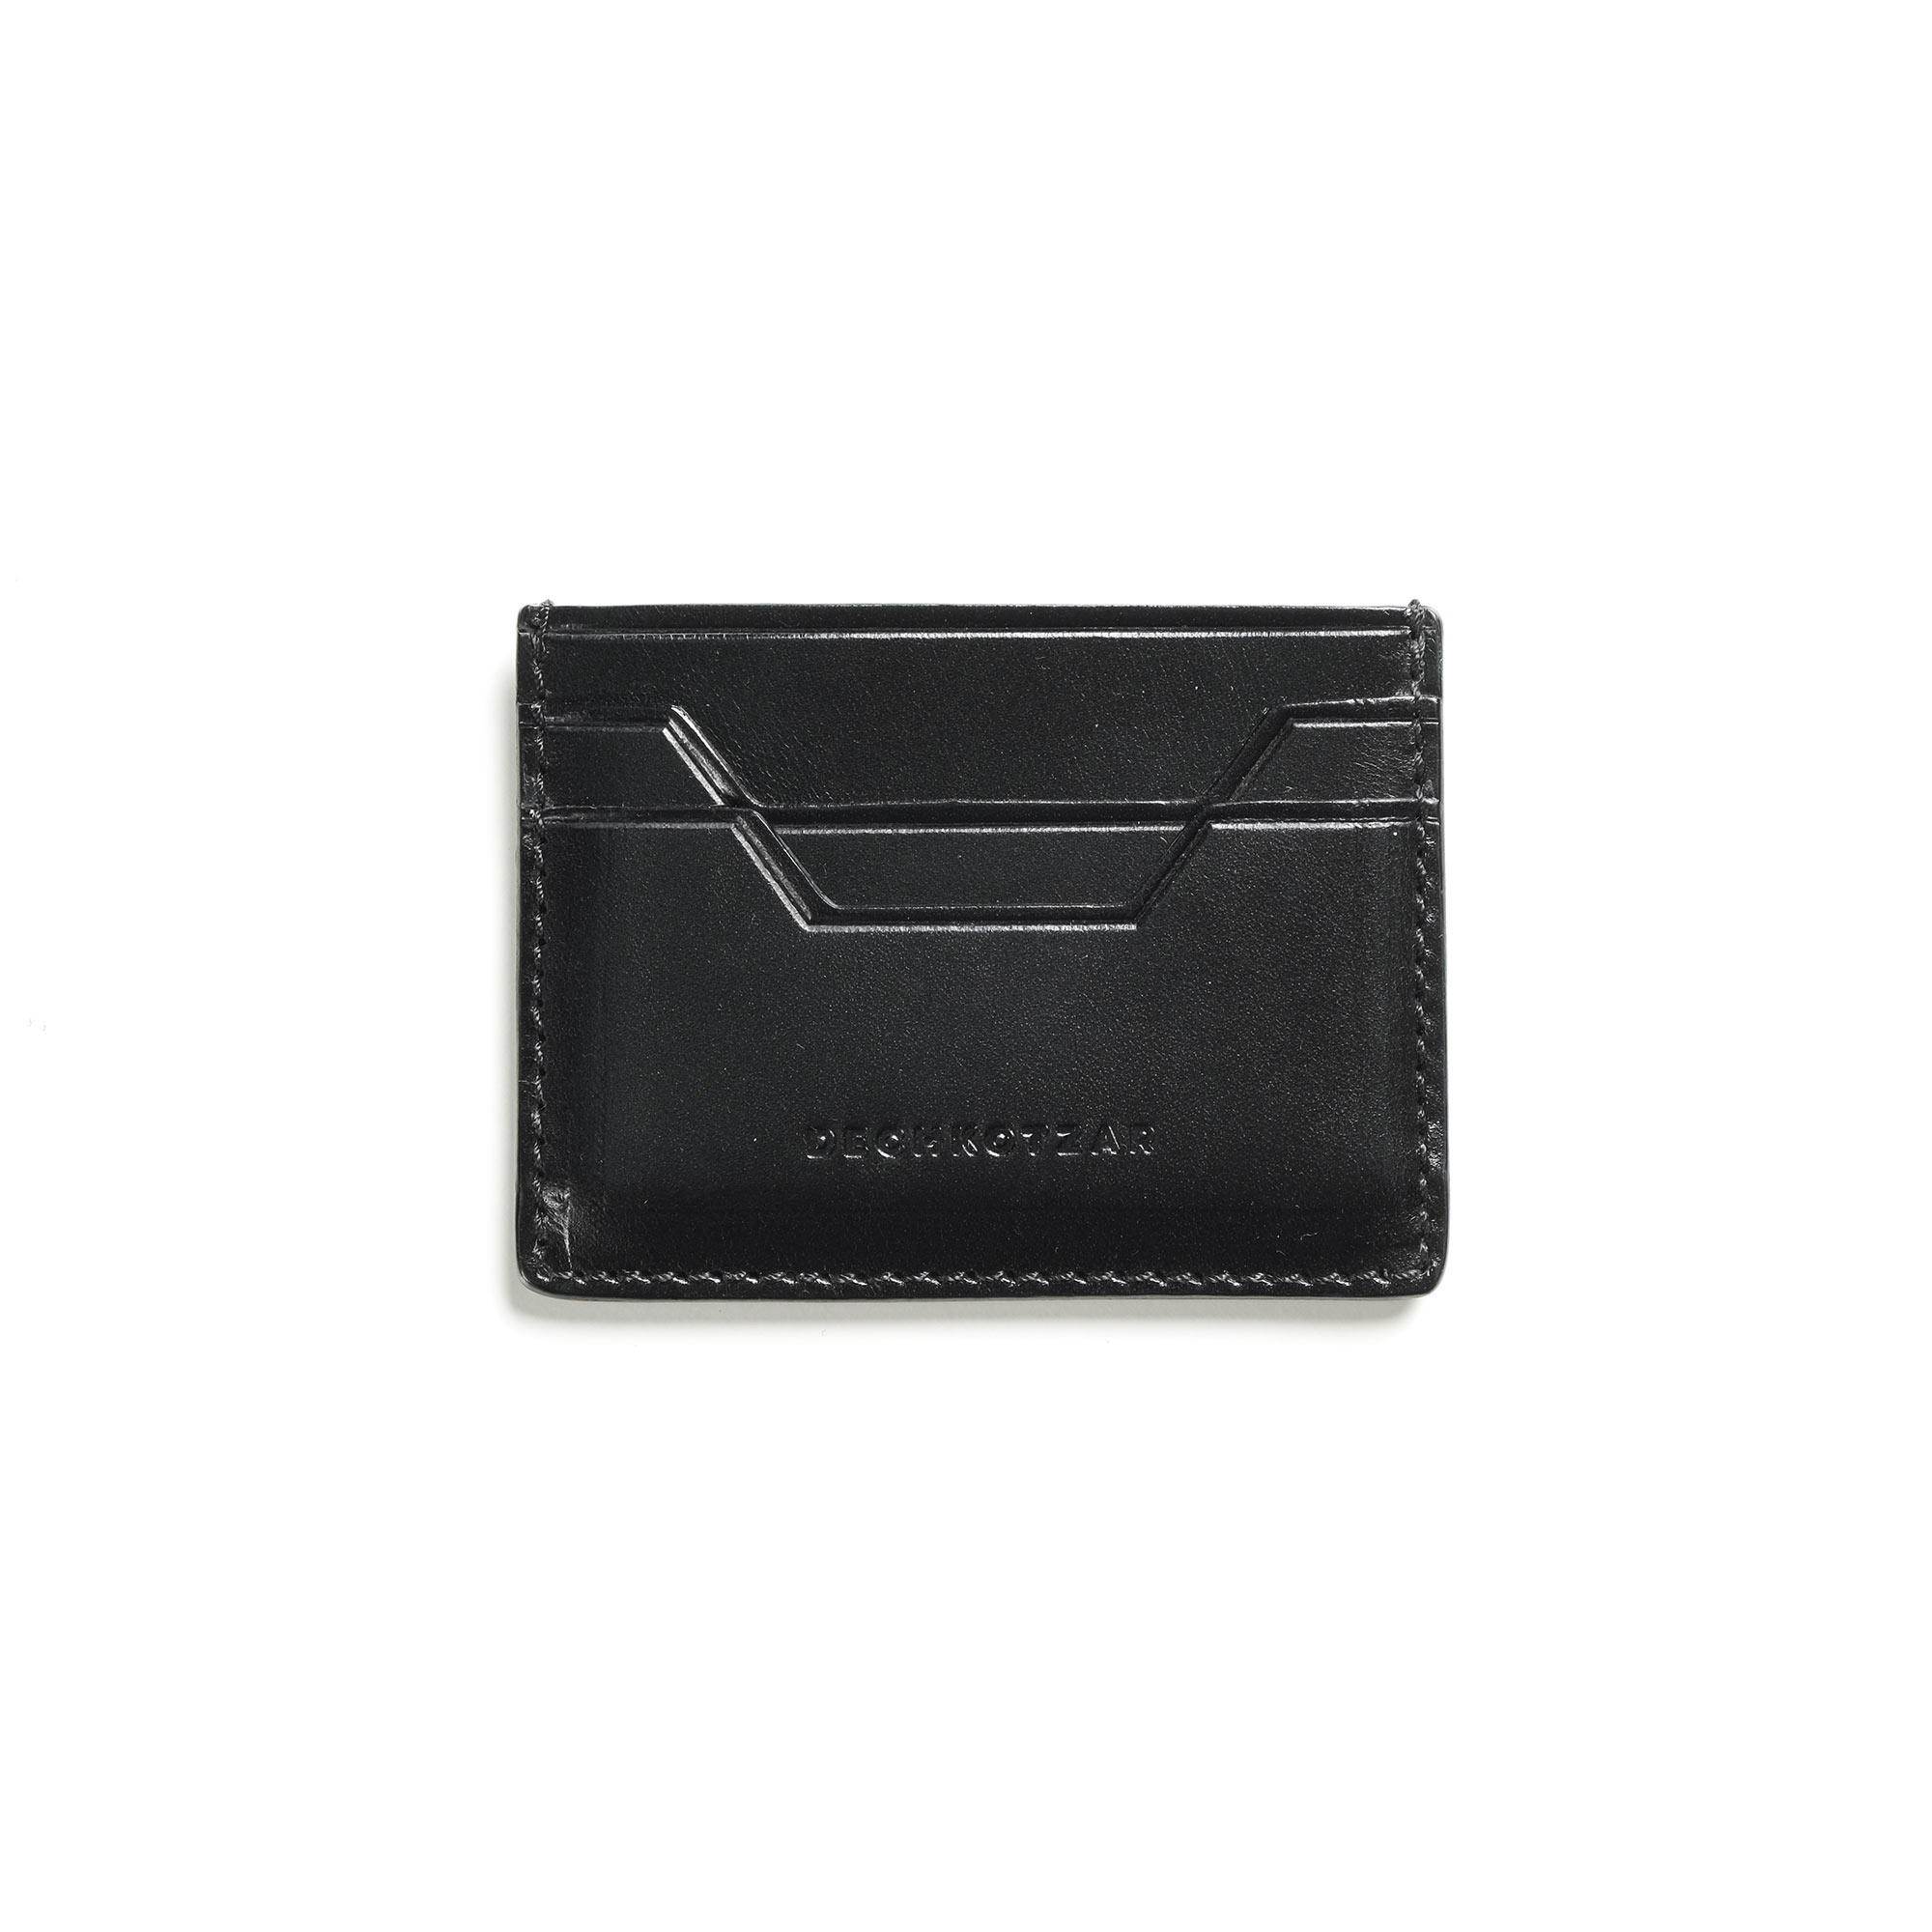 Dechkotzar black leather card holder – DechkoTzar